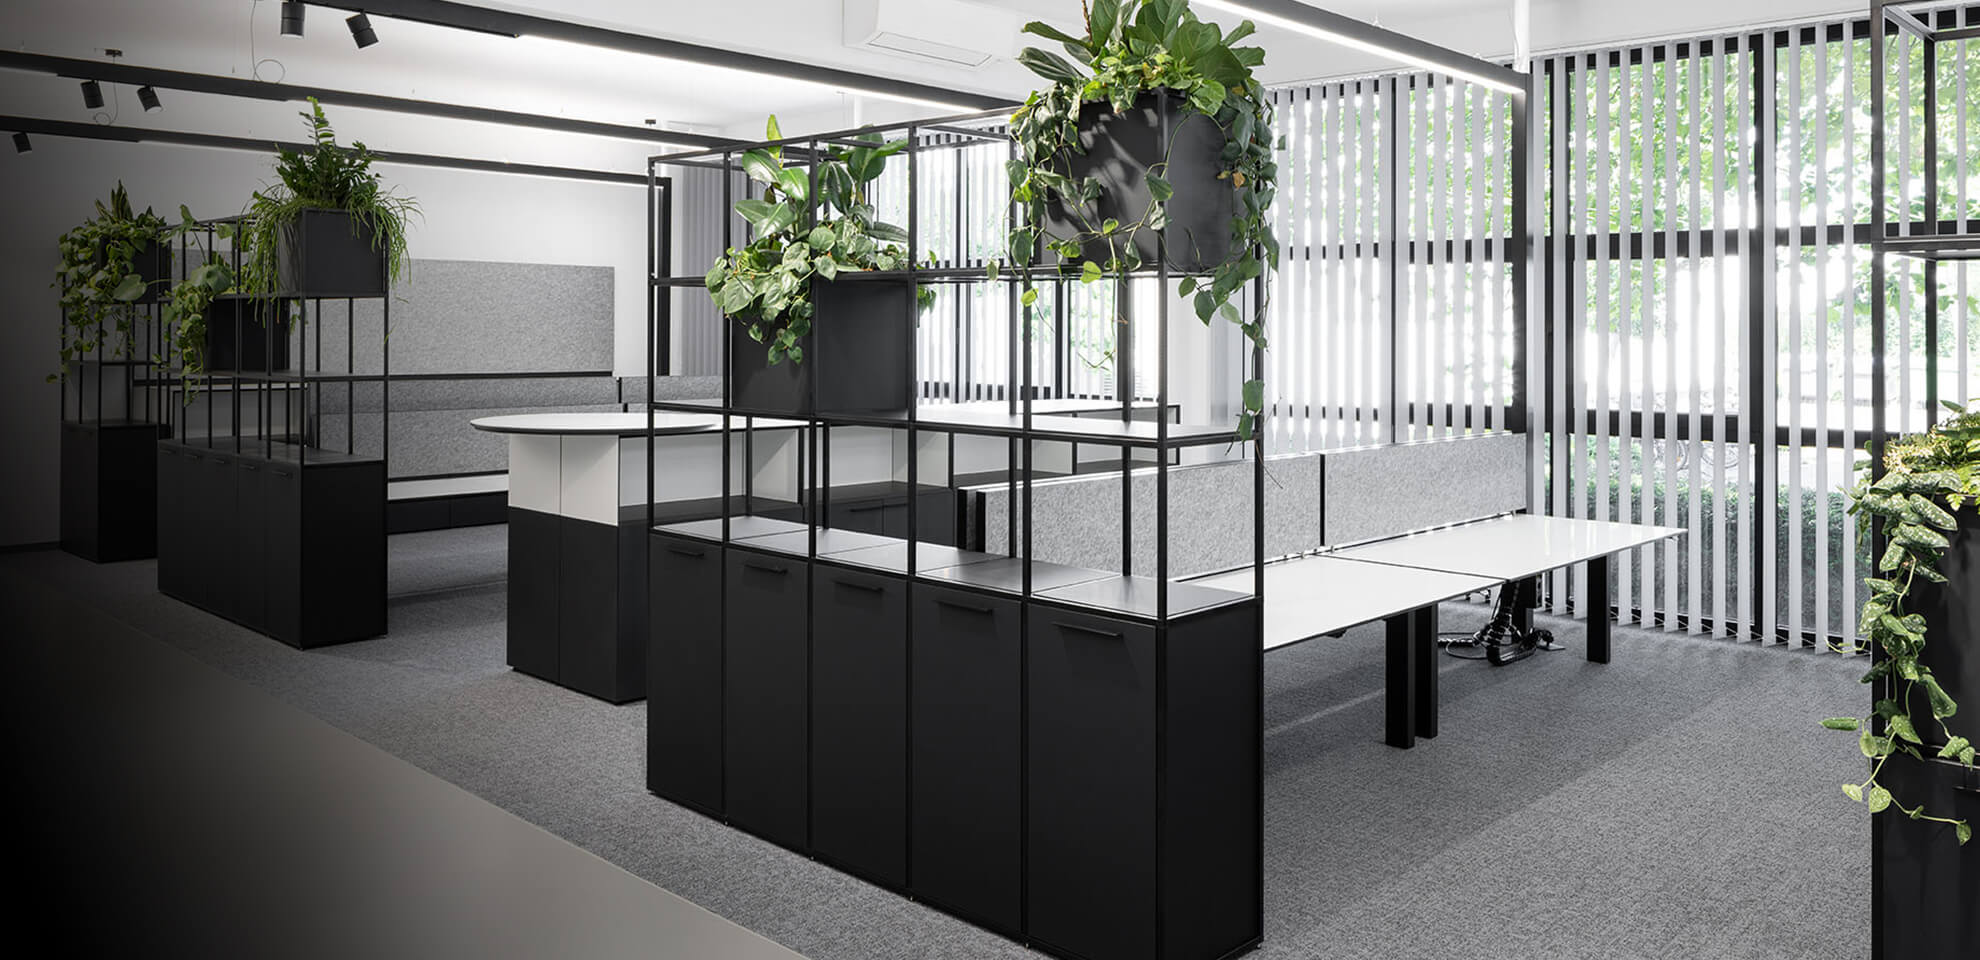 Ausbau von Einzelbüros oder Großraumbüros: Wir schaffen Wohlfühlen-Orte für Ihre Mitarbeiter.